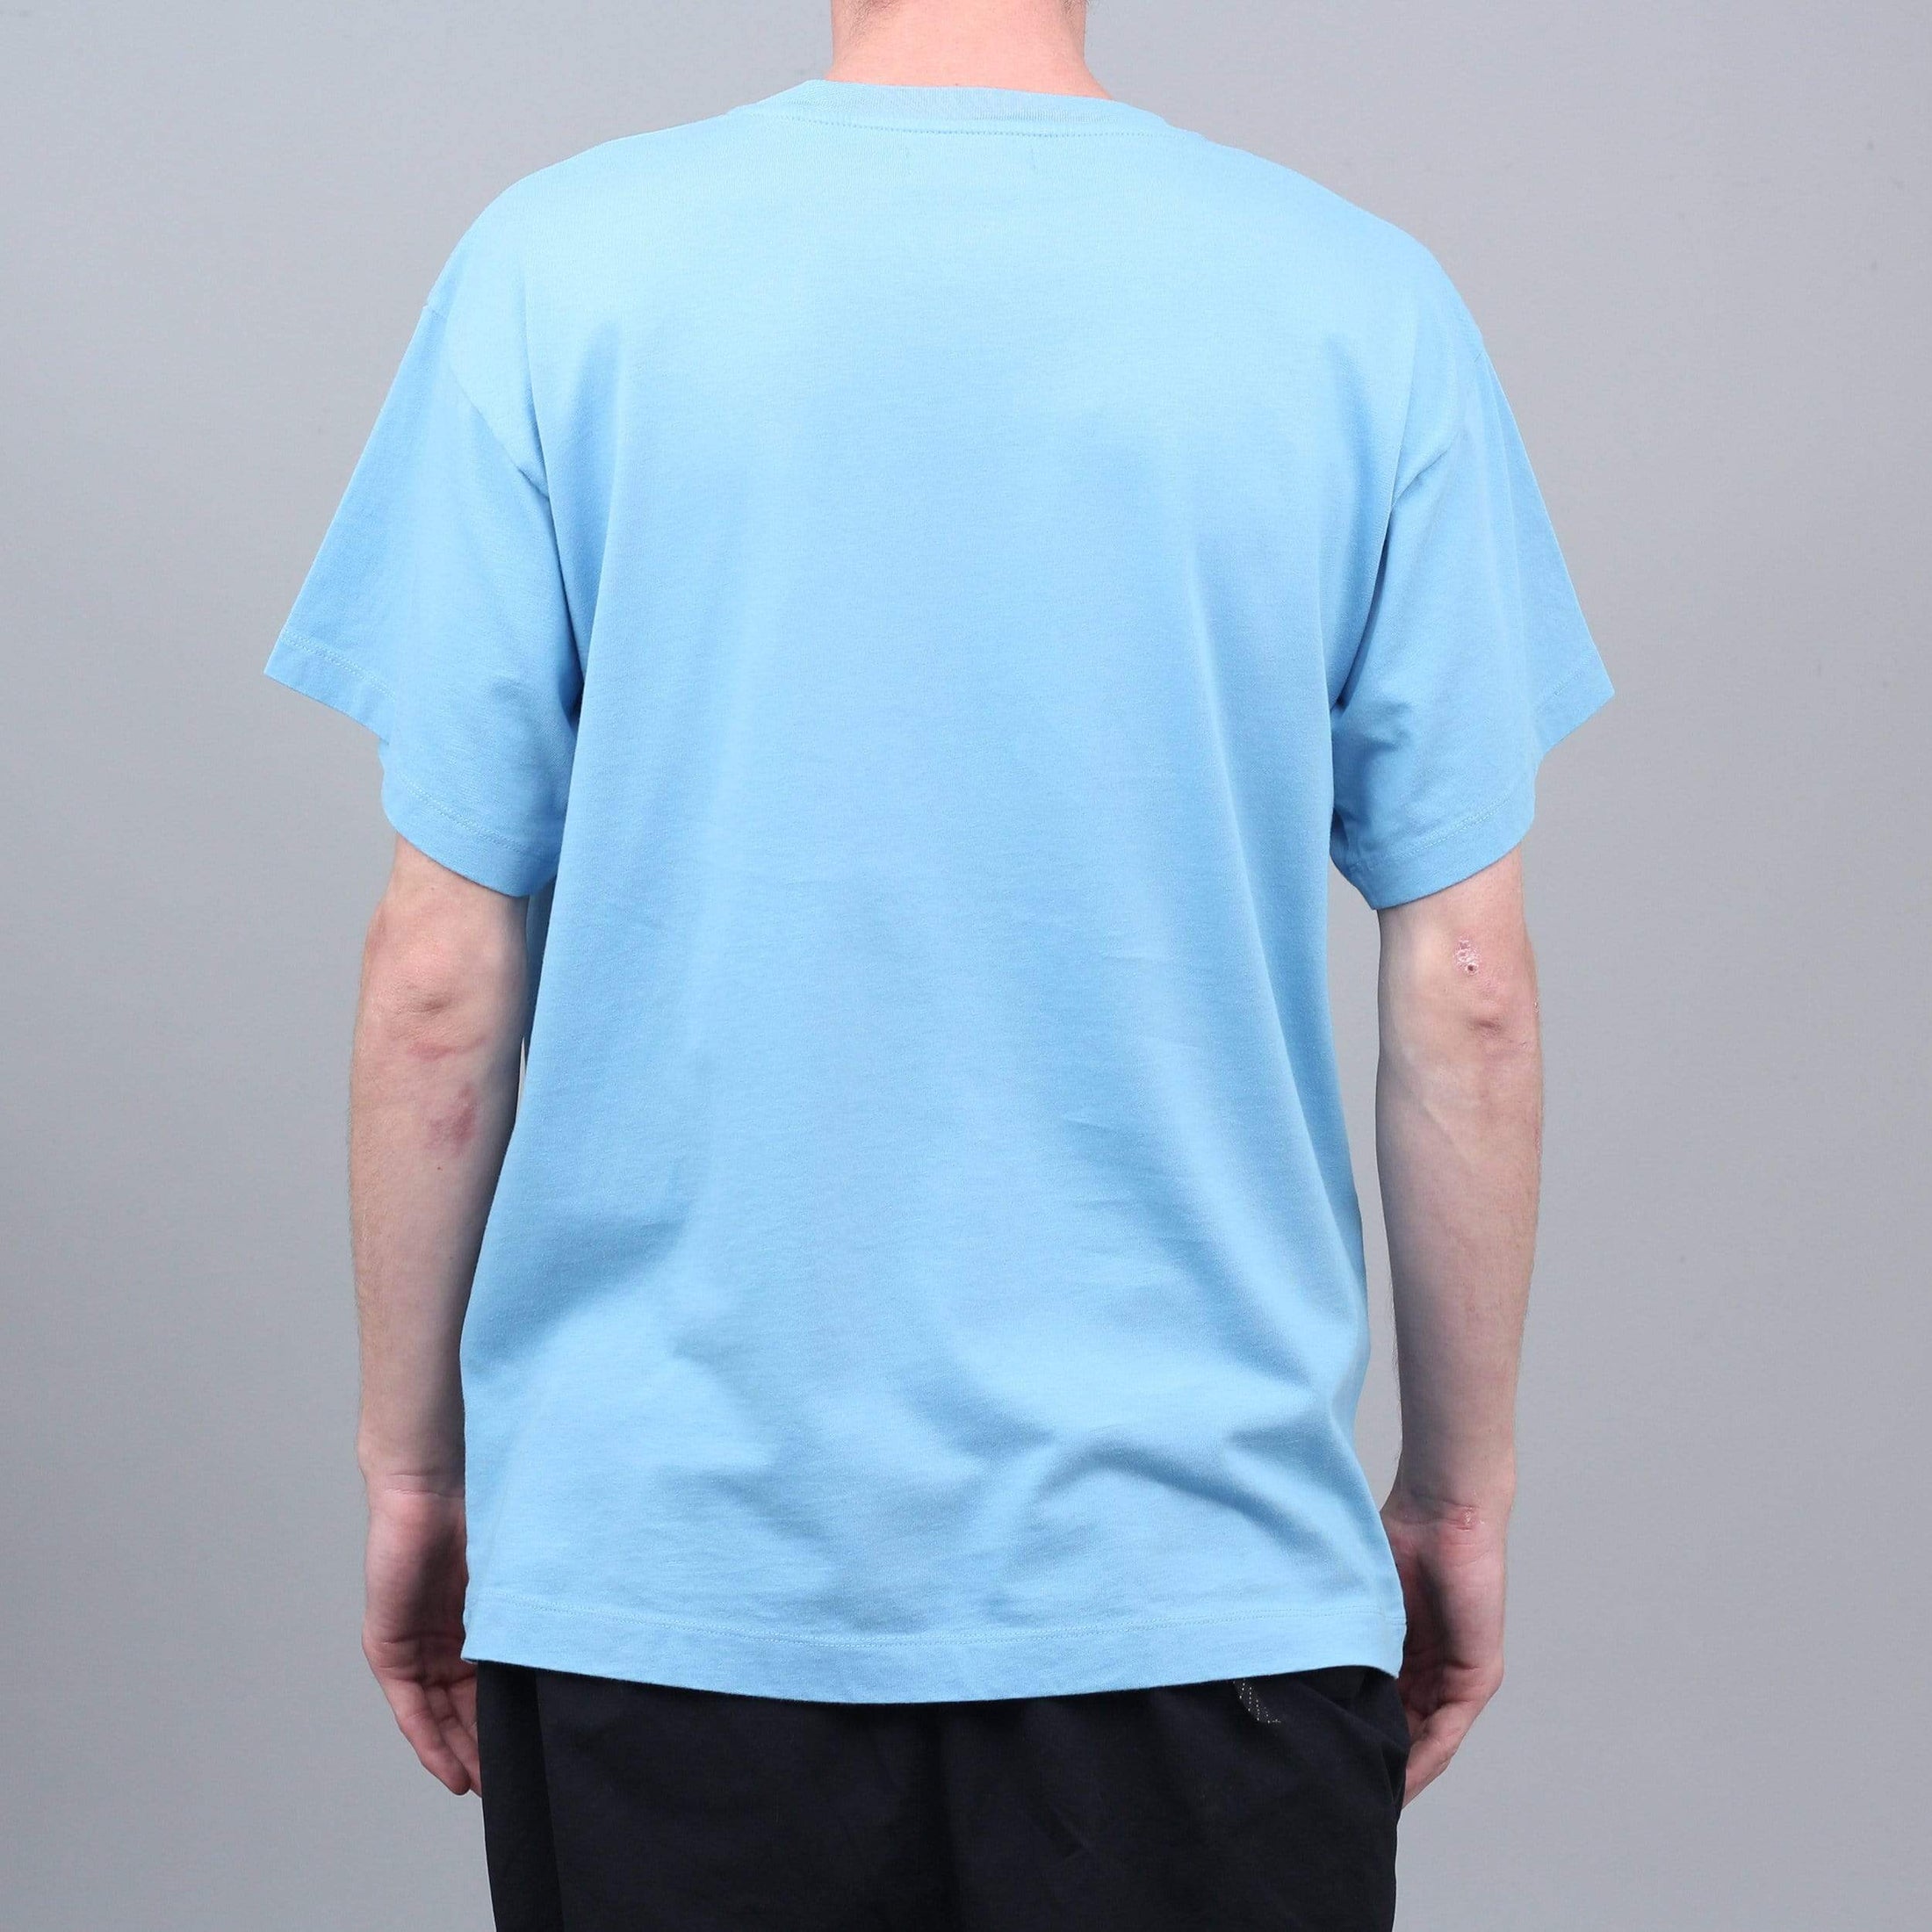 Paccbet Oktyabr T-Shirt Light Blue